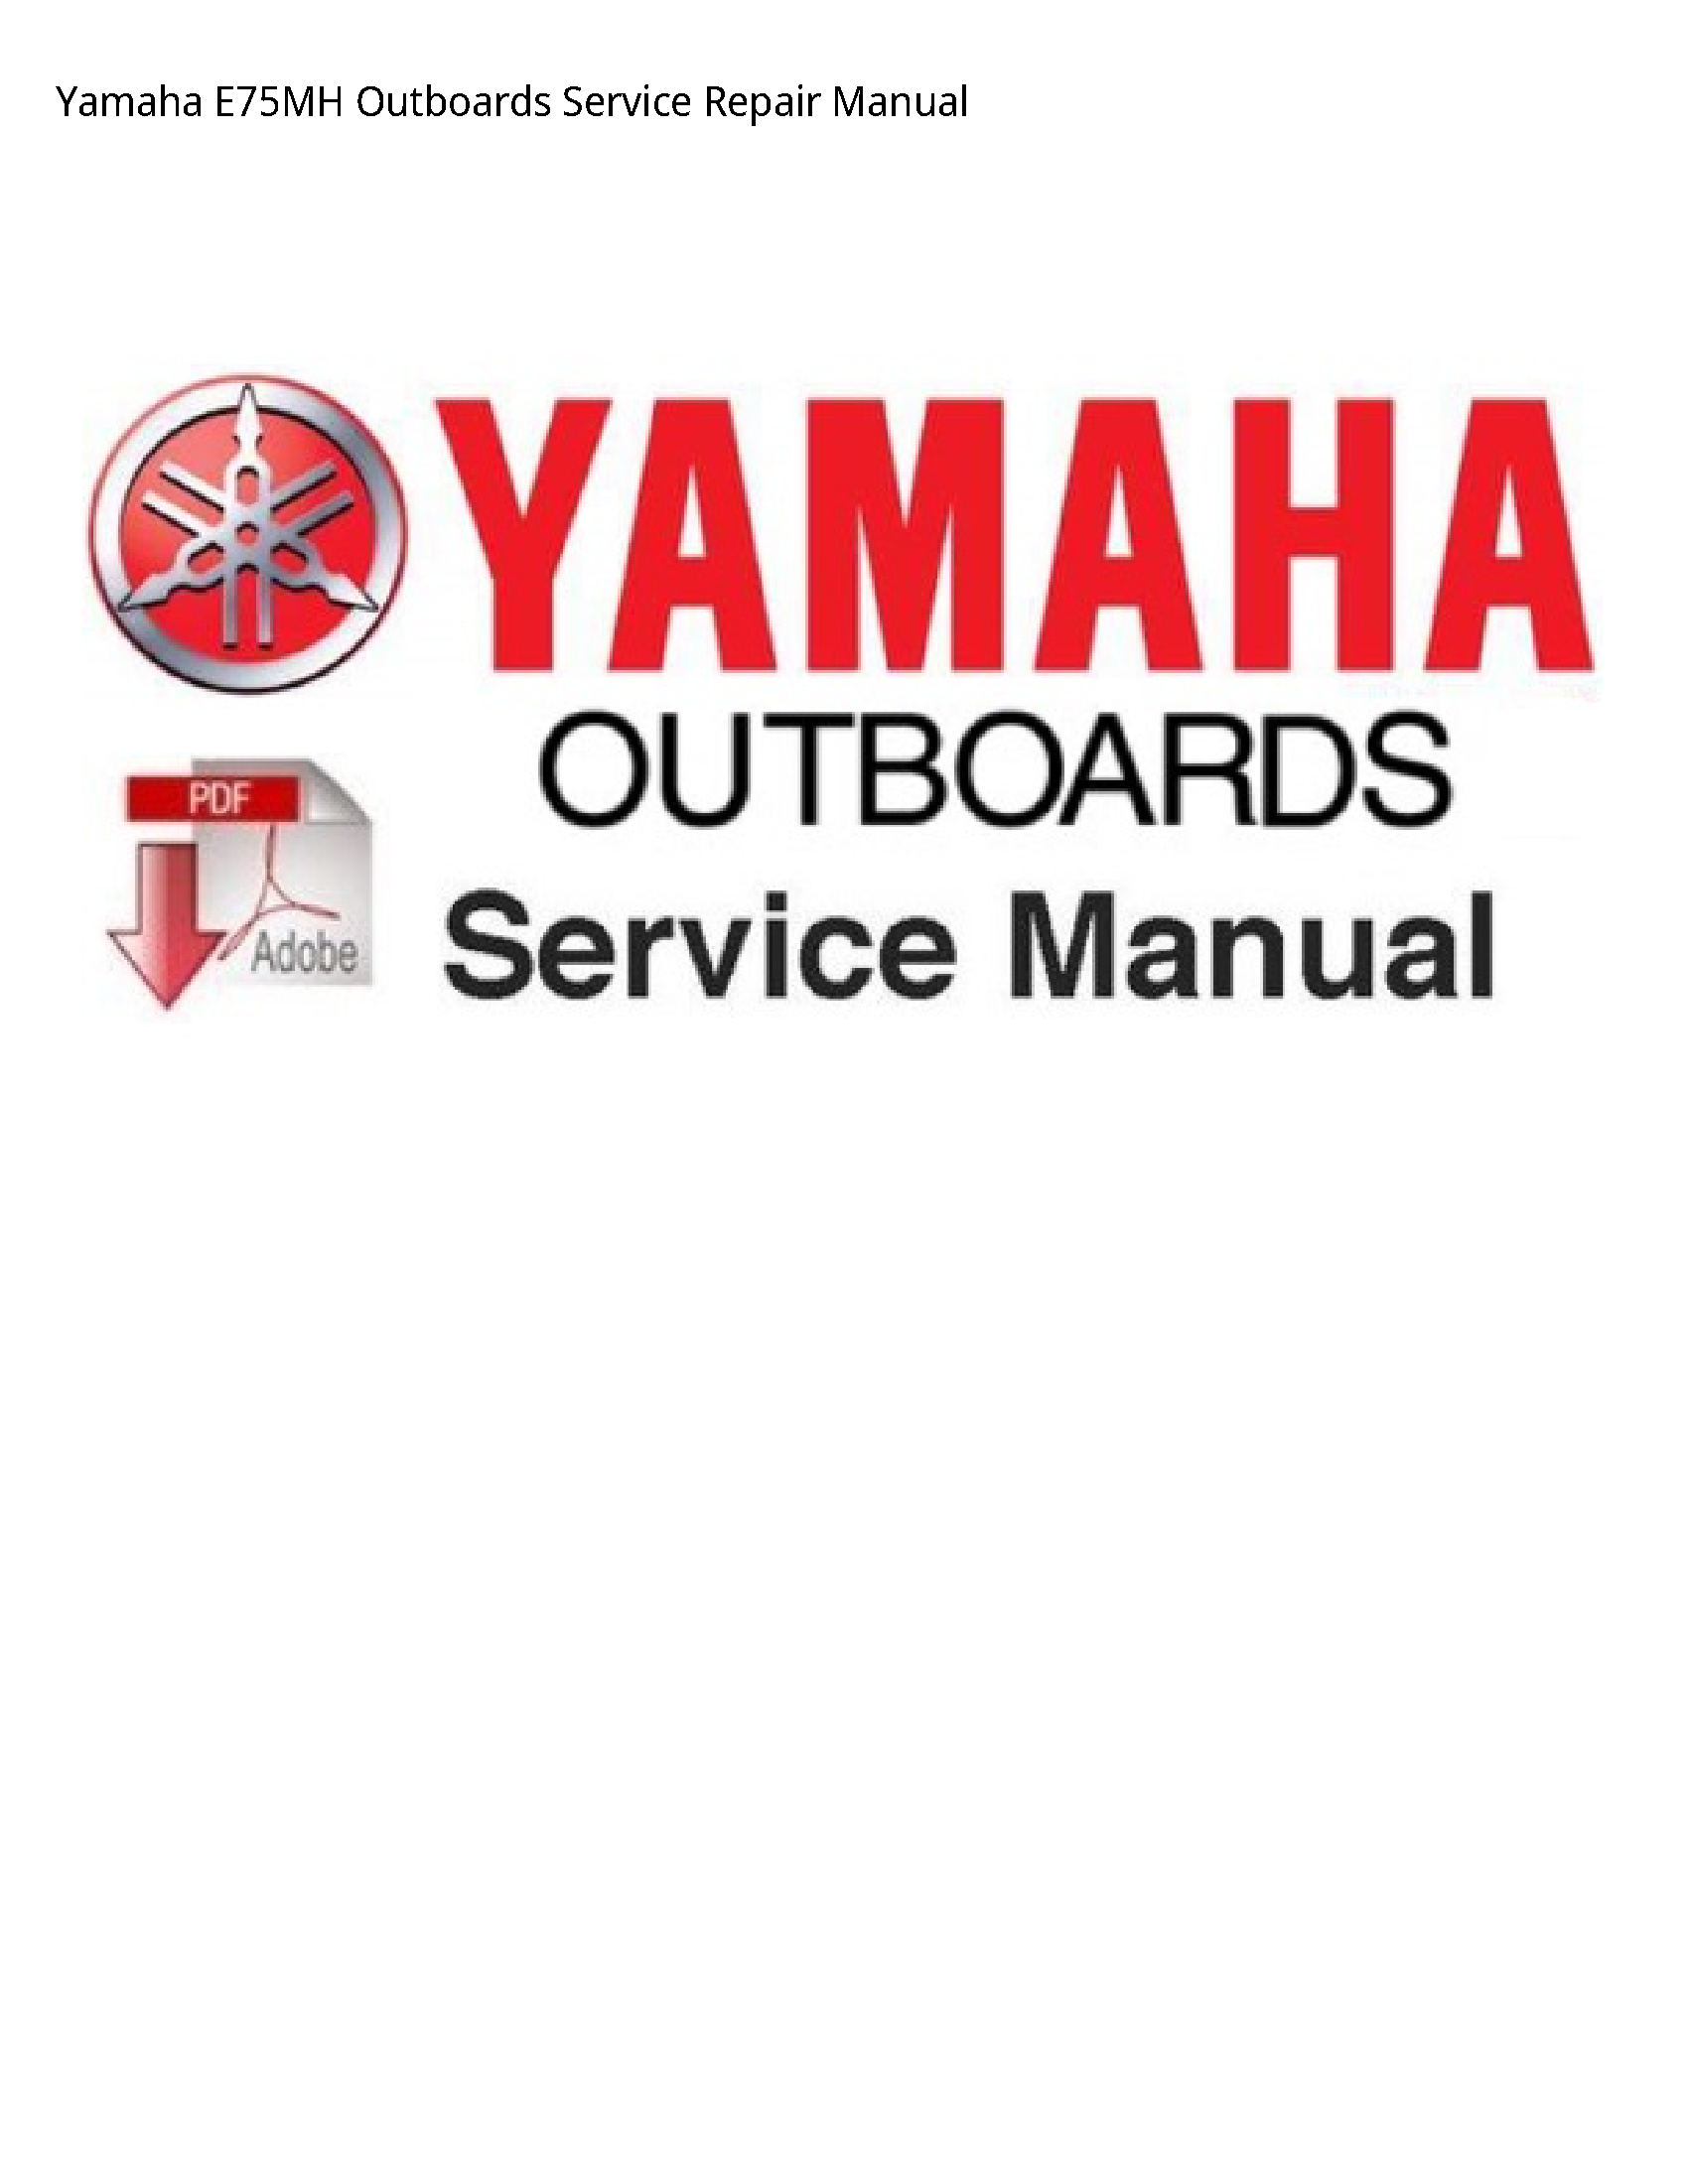 Yamaha E75MH Outboards manual